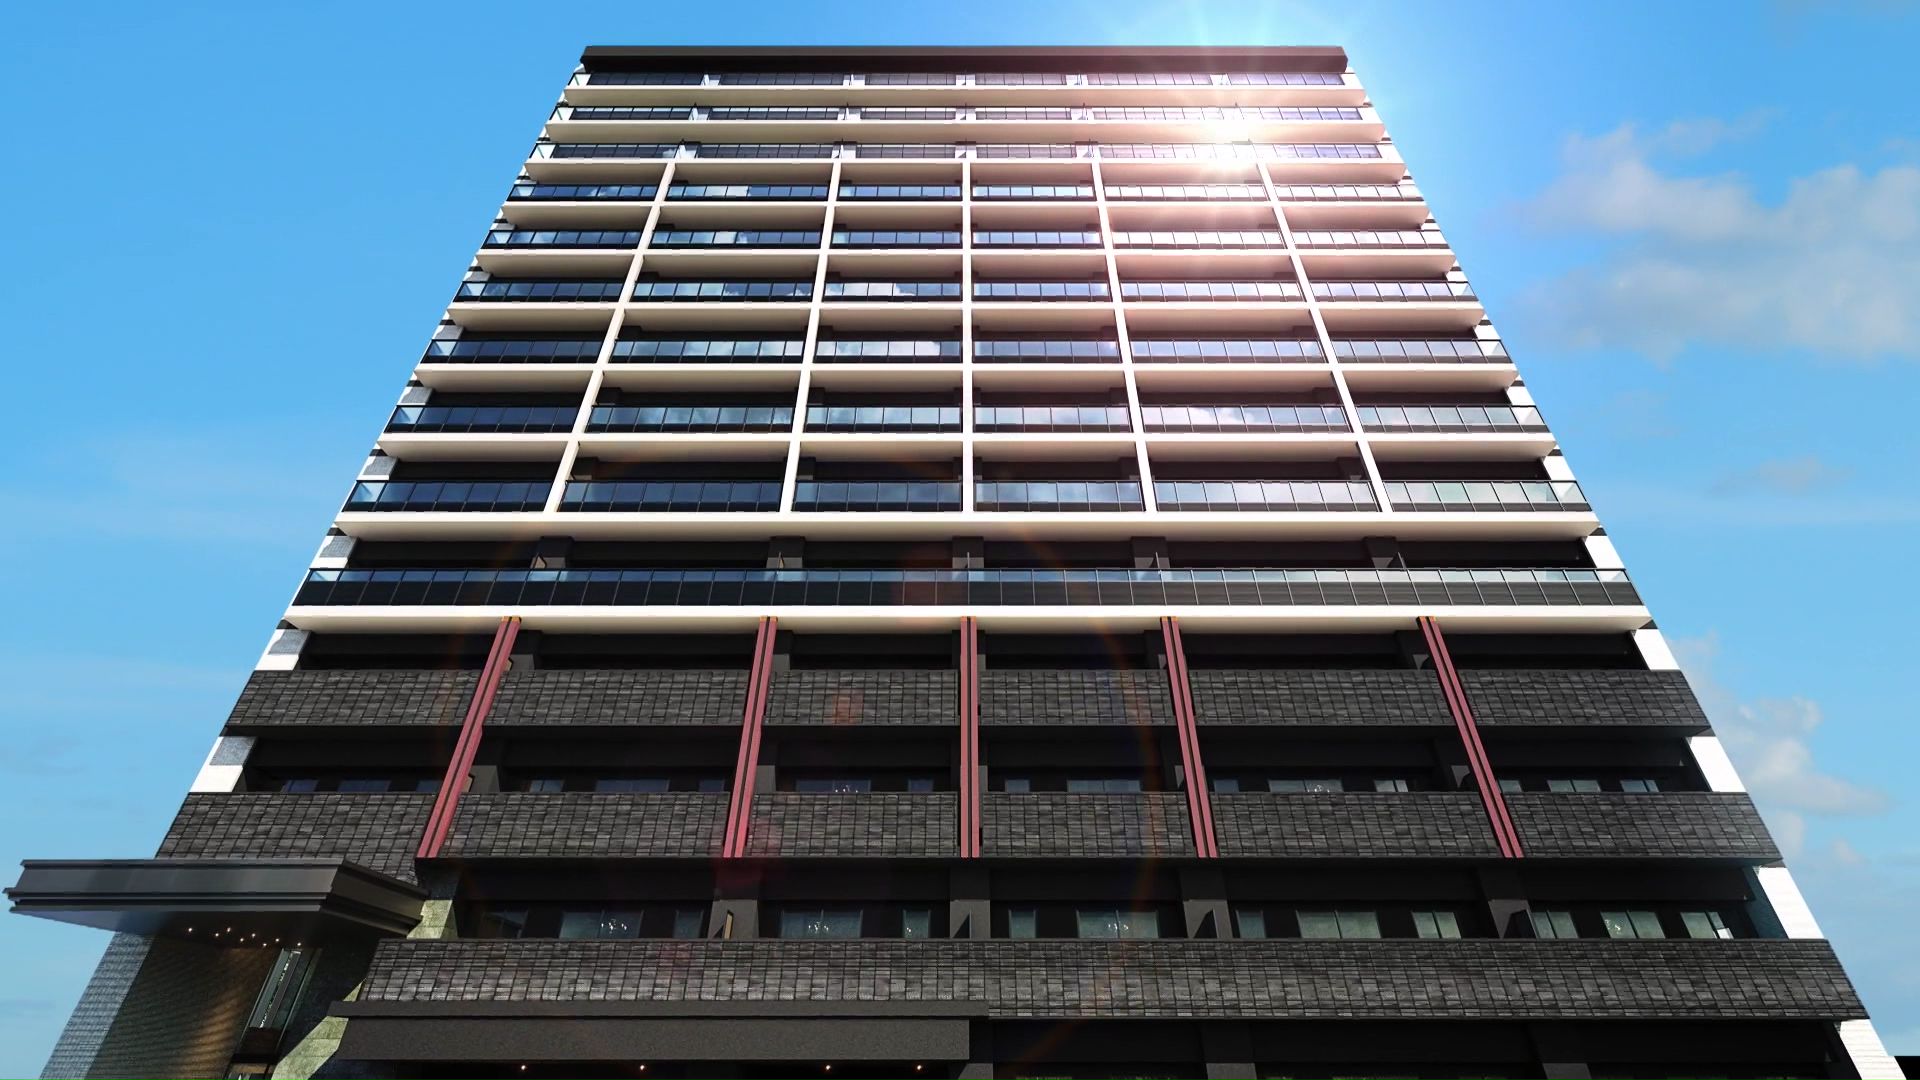 地上14階建てで94戸 市内最大規模のマンション